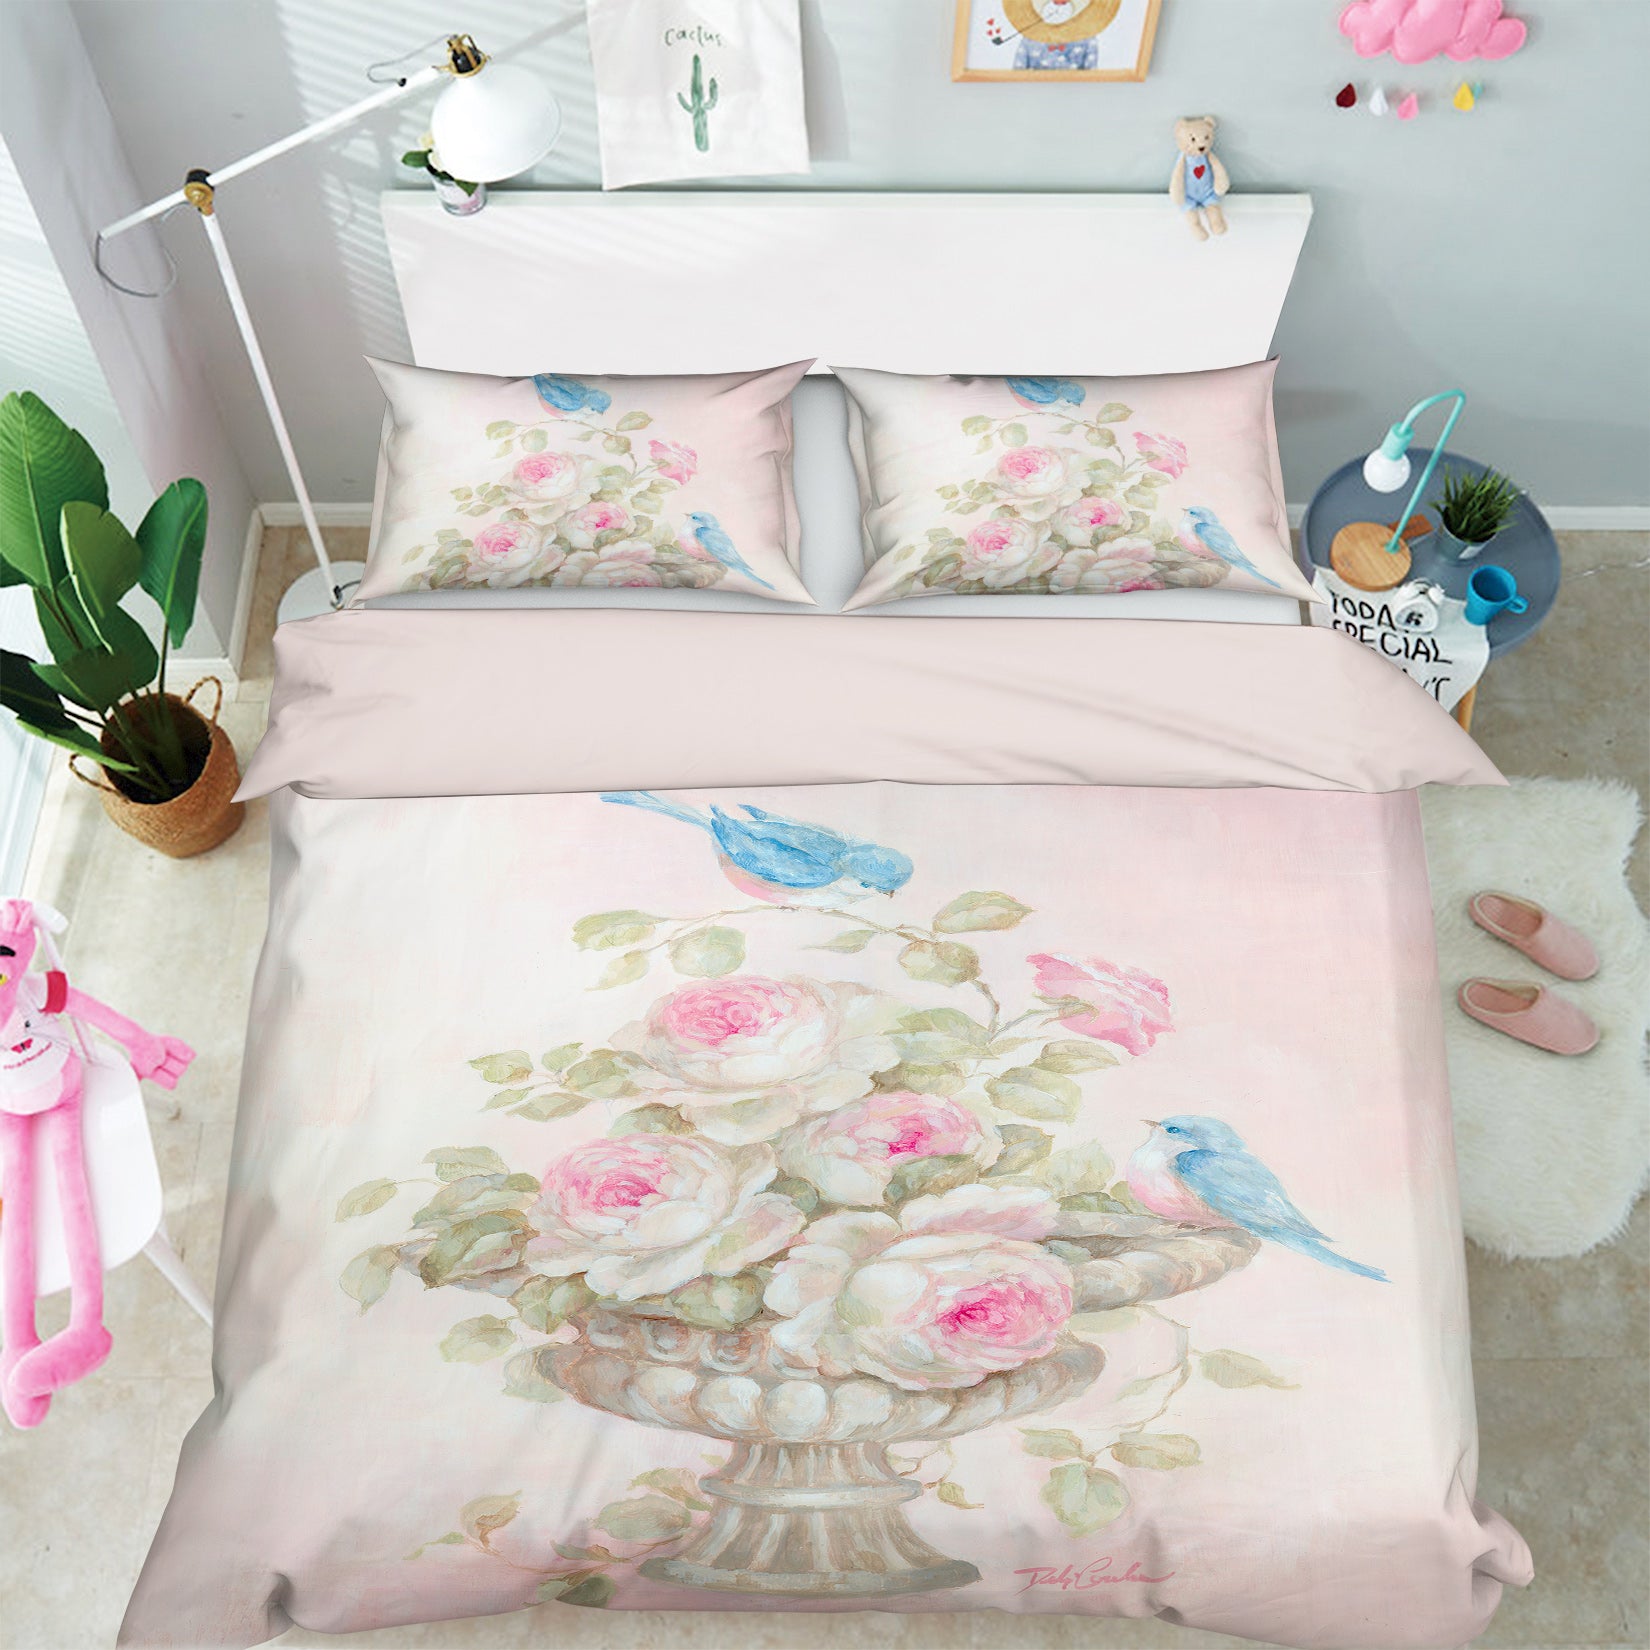 3D Flowerpot Bird 2146 Debi Coules Bedding Bed Pillowcases Quilt